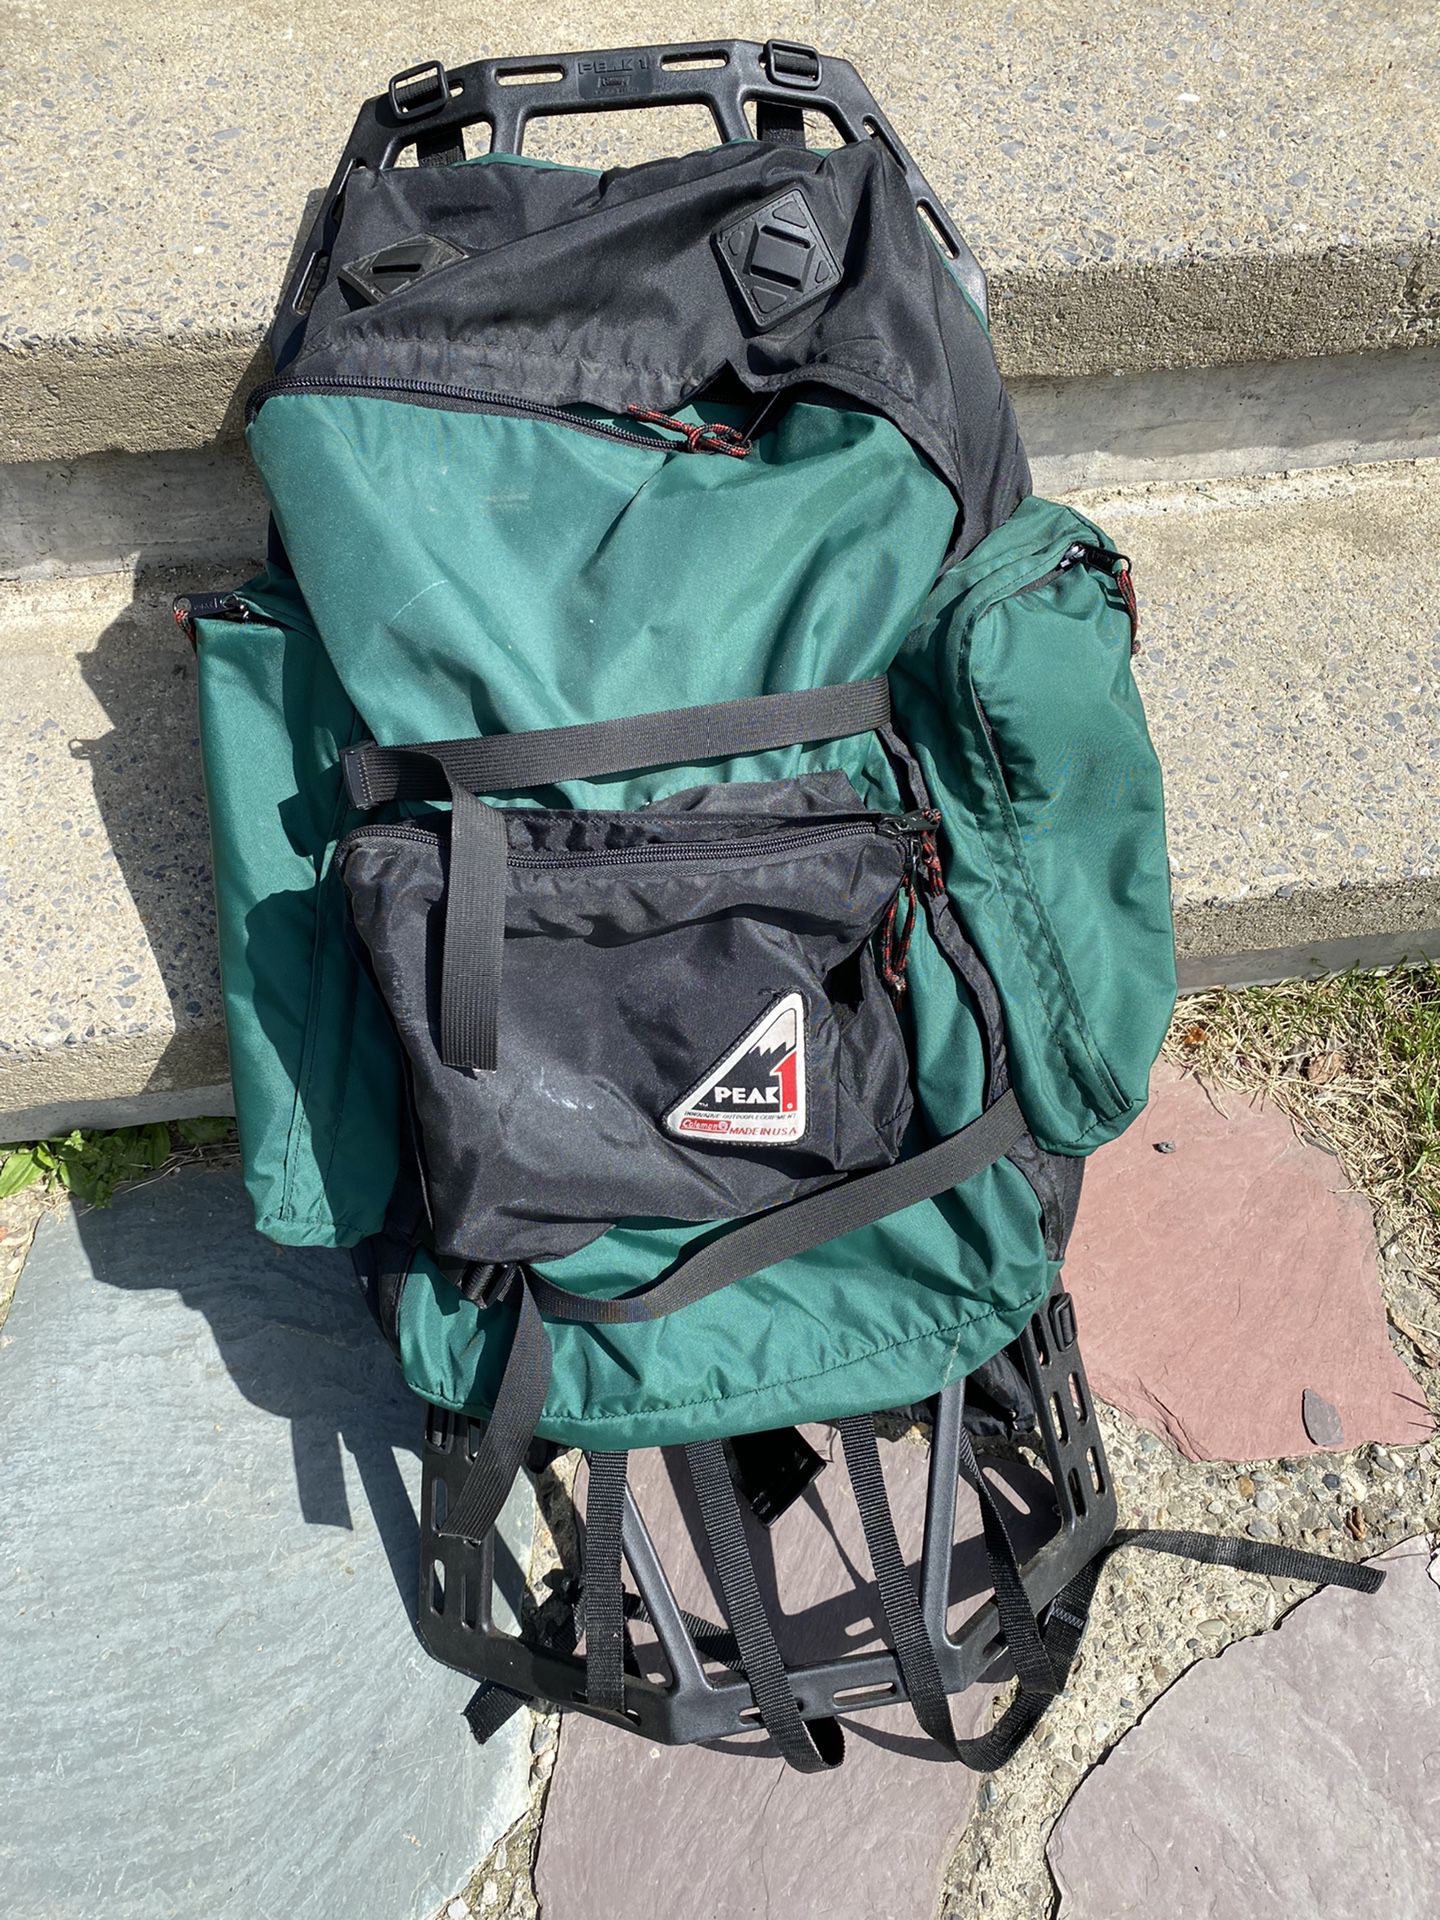 Coleman Peak 1 External Frame Backpack Ruck Sack Hike Camp Green USA MADE can deliver